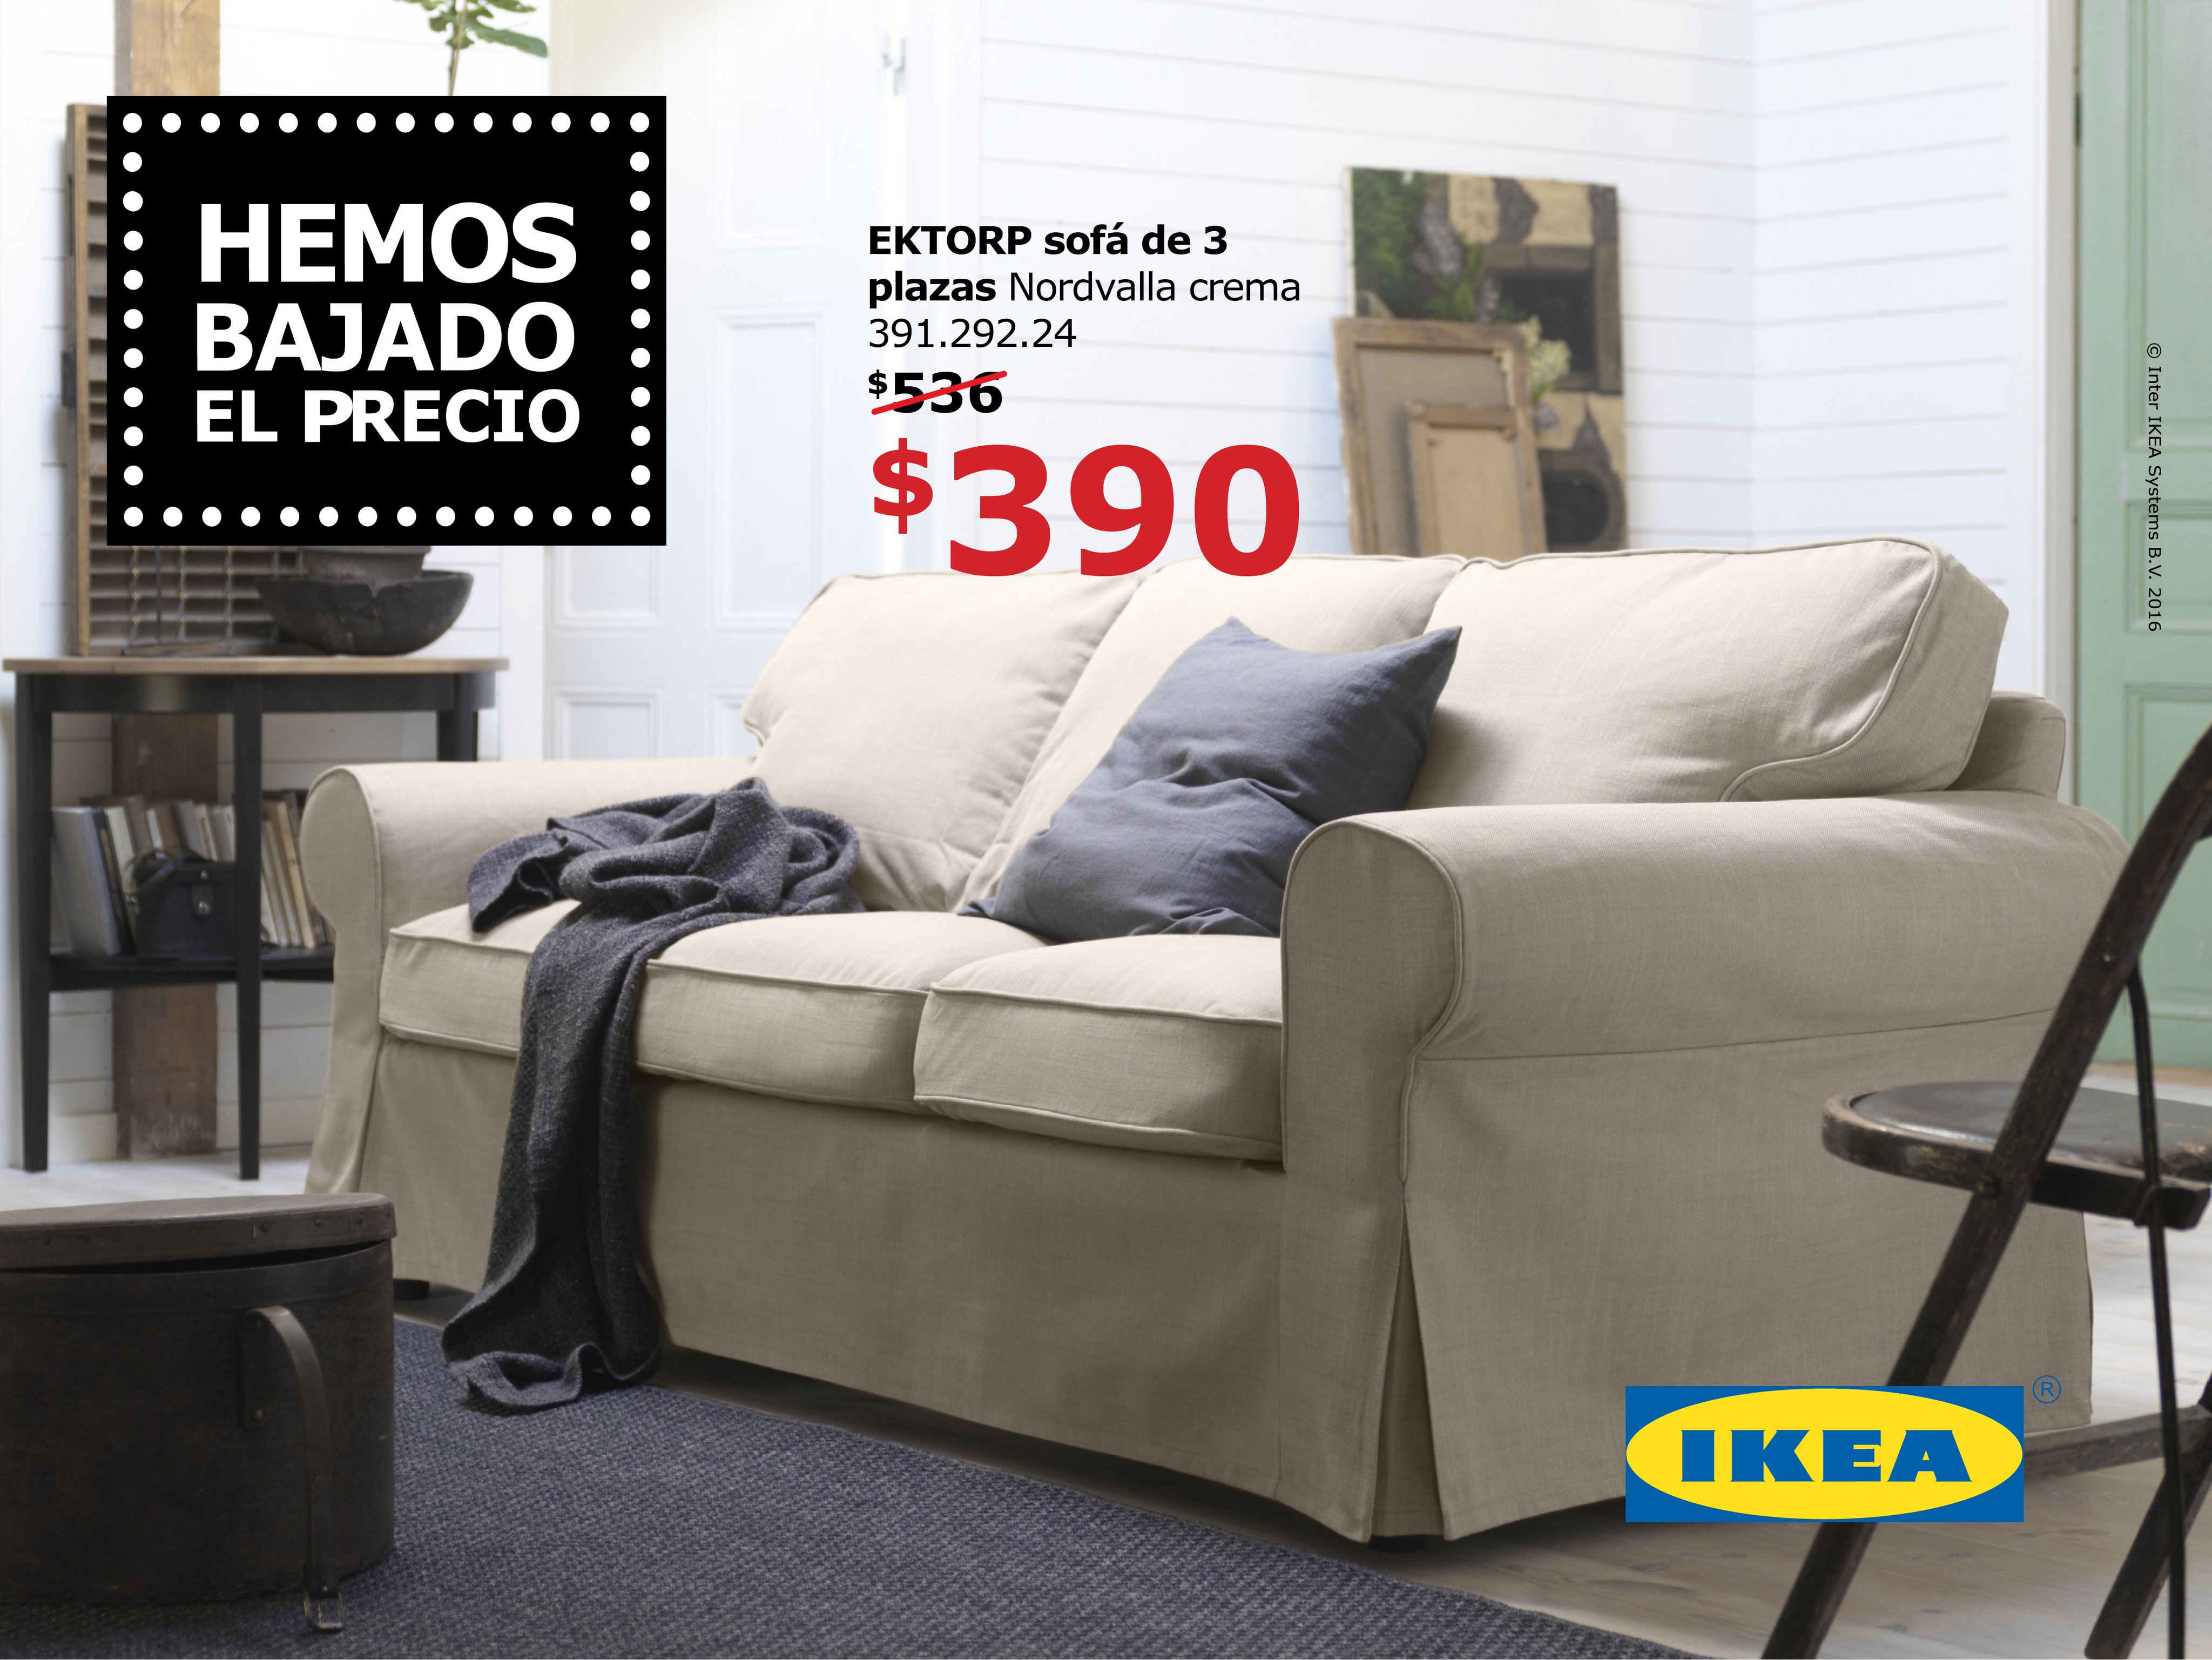 material Desplazamiento falda IKEA Puerto Rico on Twitter: "¡Hemos bajado el precio de tu sofá EKTORP  para que tus invitados estén aún más cómodos! https://t.co/5RJXfQVeCh" /  Twitter